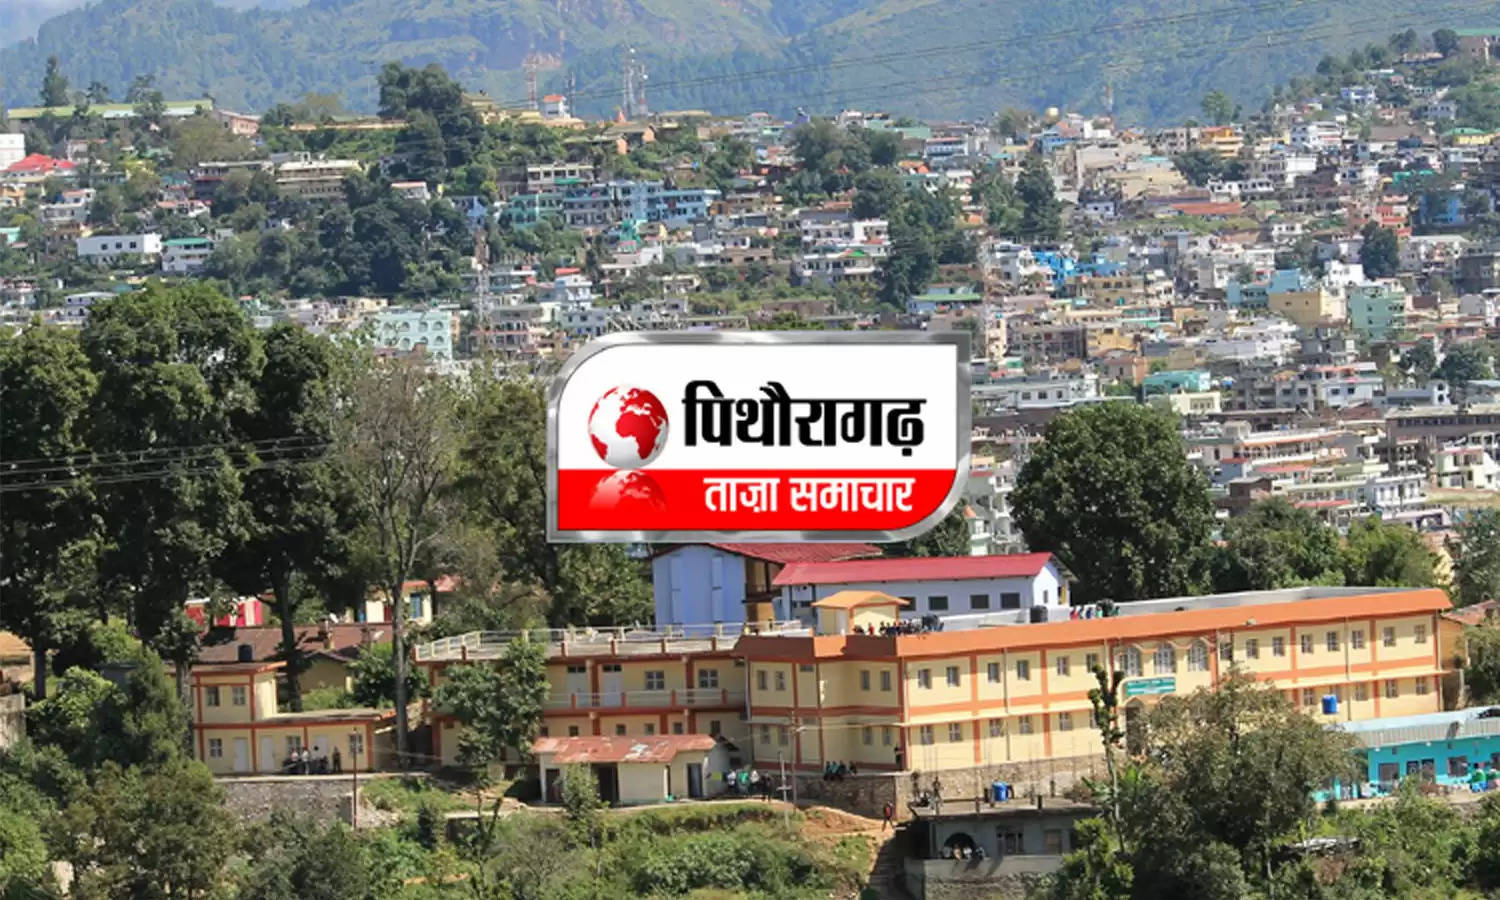 Uttarakhand News Bulletin-42 : पुलिस कर्मियों को आपदा से निपटने के टिप्स बताए, जानिए पिथौरागढ़ की ऐसी ही तमाम छोटी बड़ी खबरें...